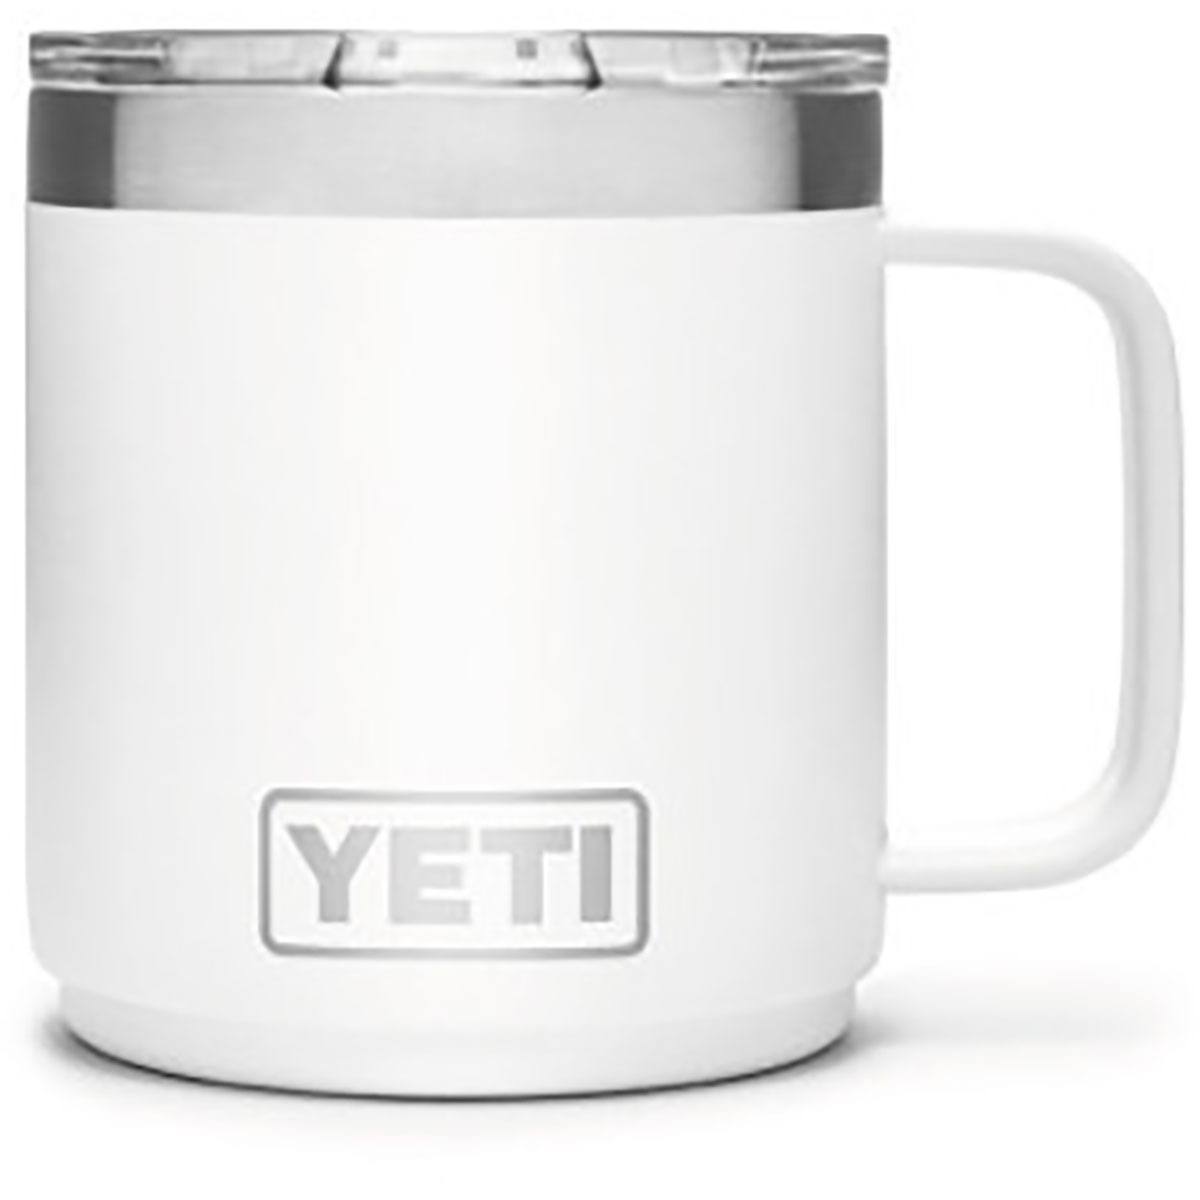 Yeti Coolers Rambler 10oz Mug Tasse von Yeti Coolers